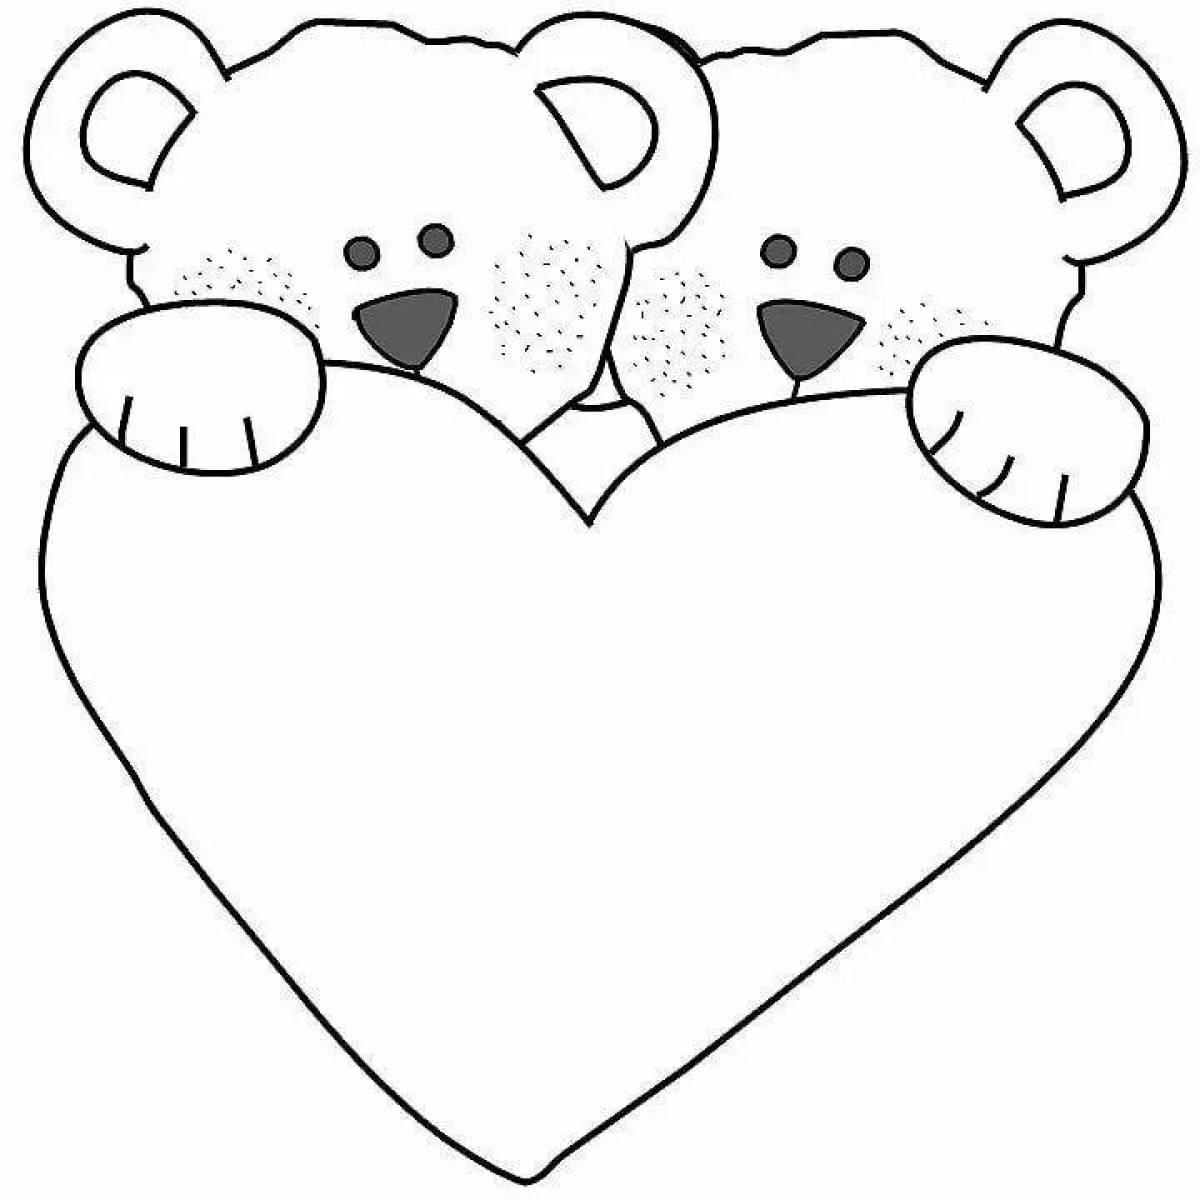 Раскраска веселый медведь с сердечком